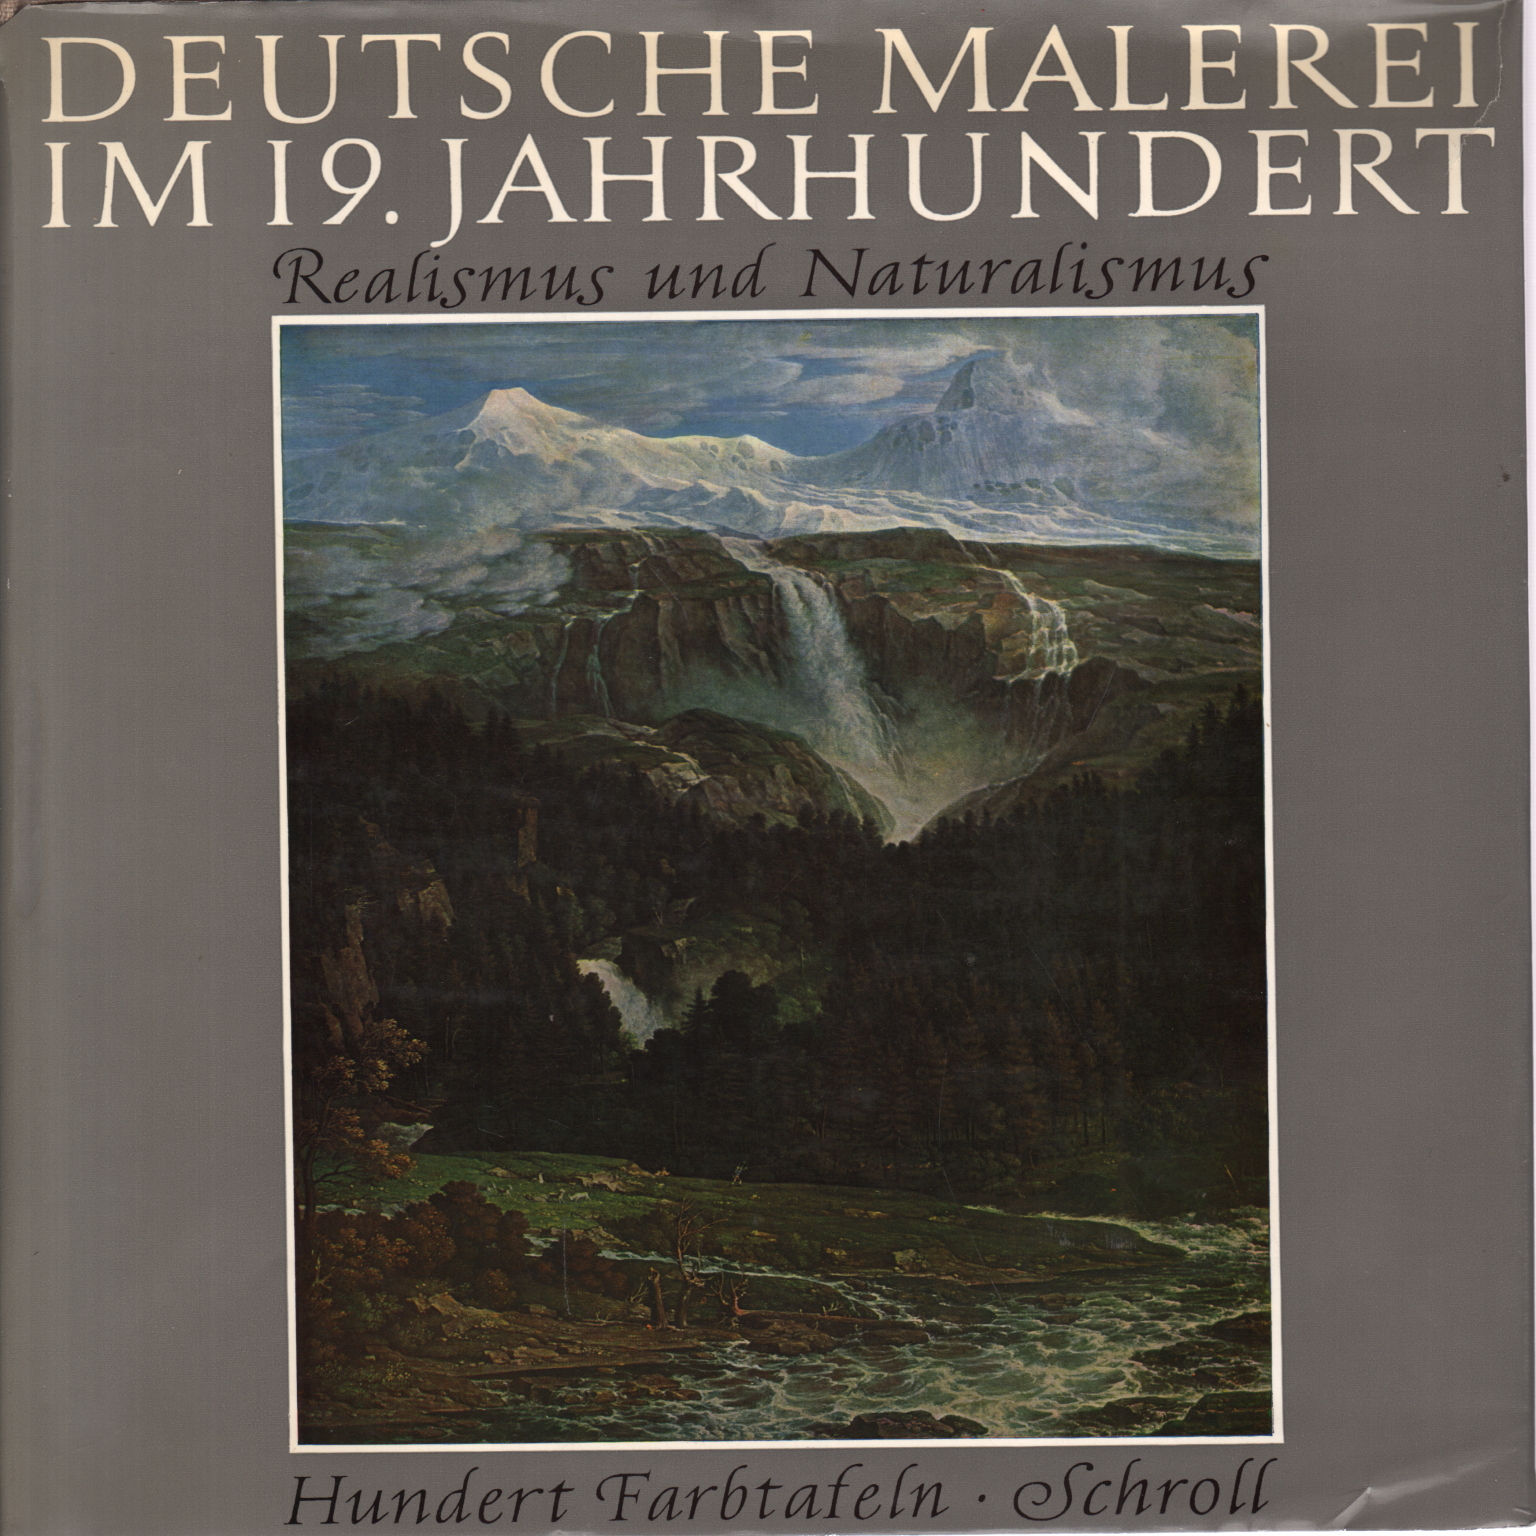 Deutsche Malerei im 19. Jahrhundert, María Buchsbaum